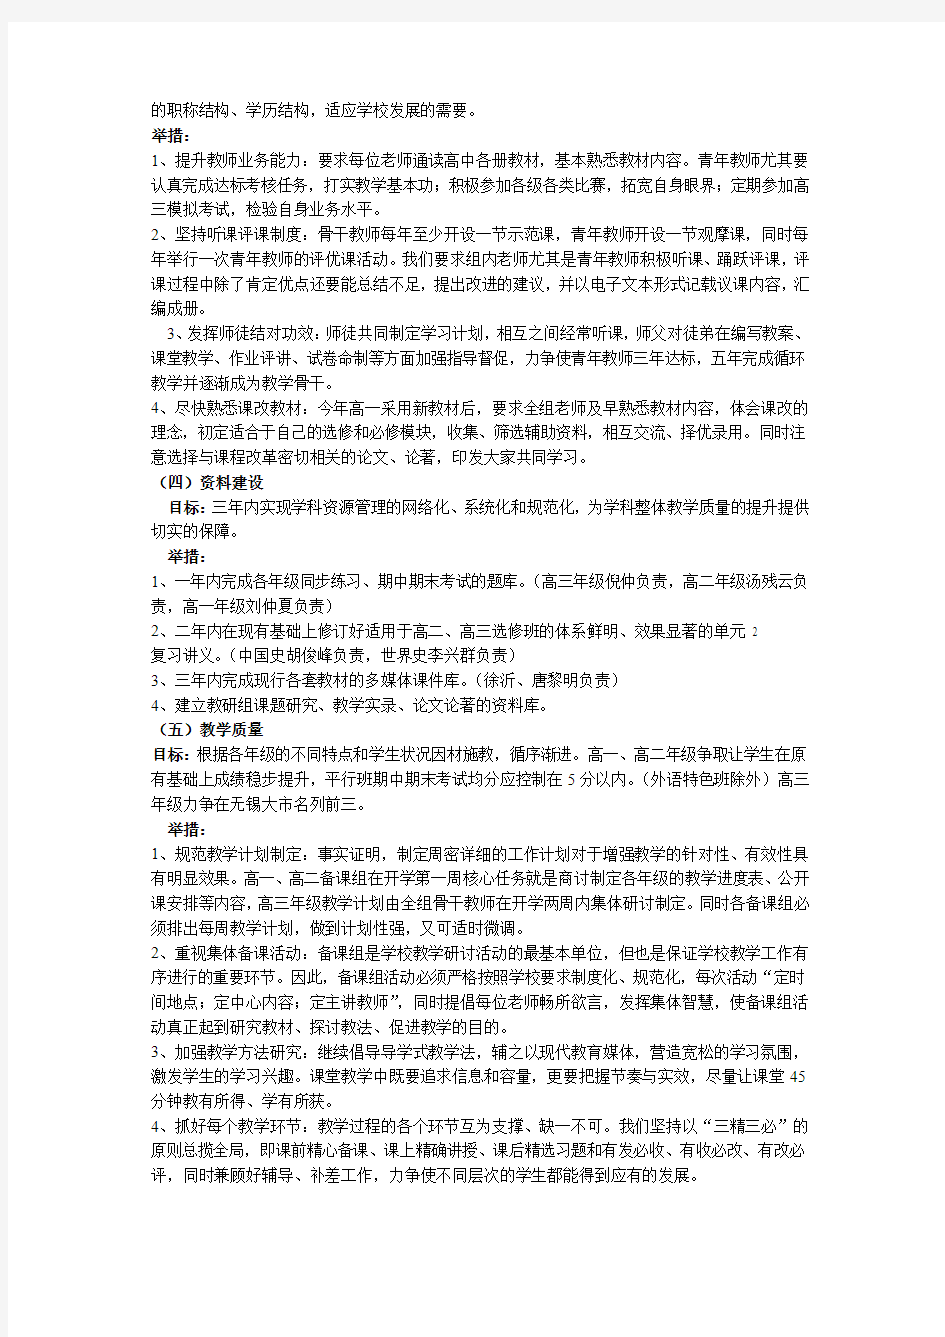 江苏省锡山高级中学历史教研组三年发展规划